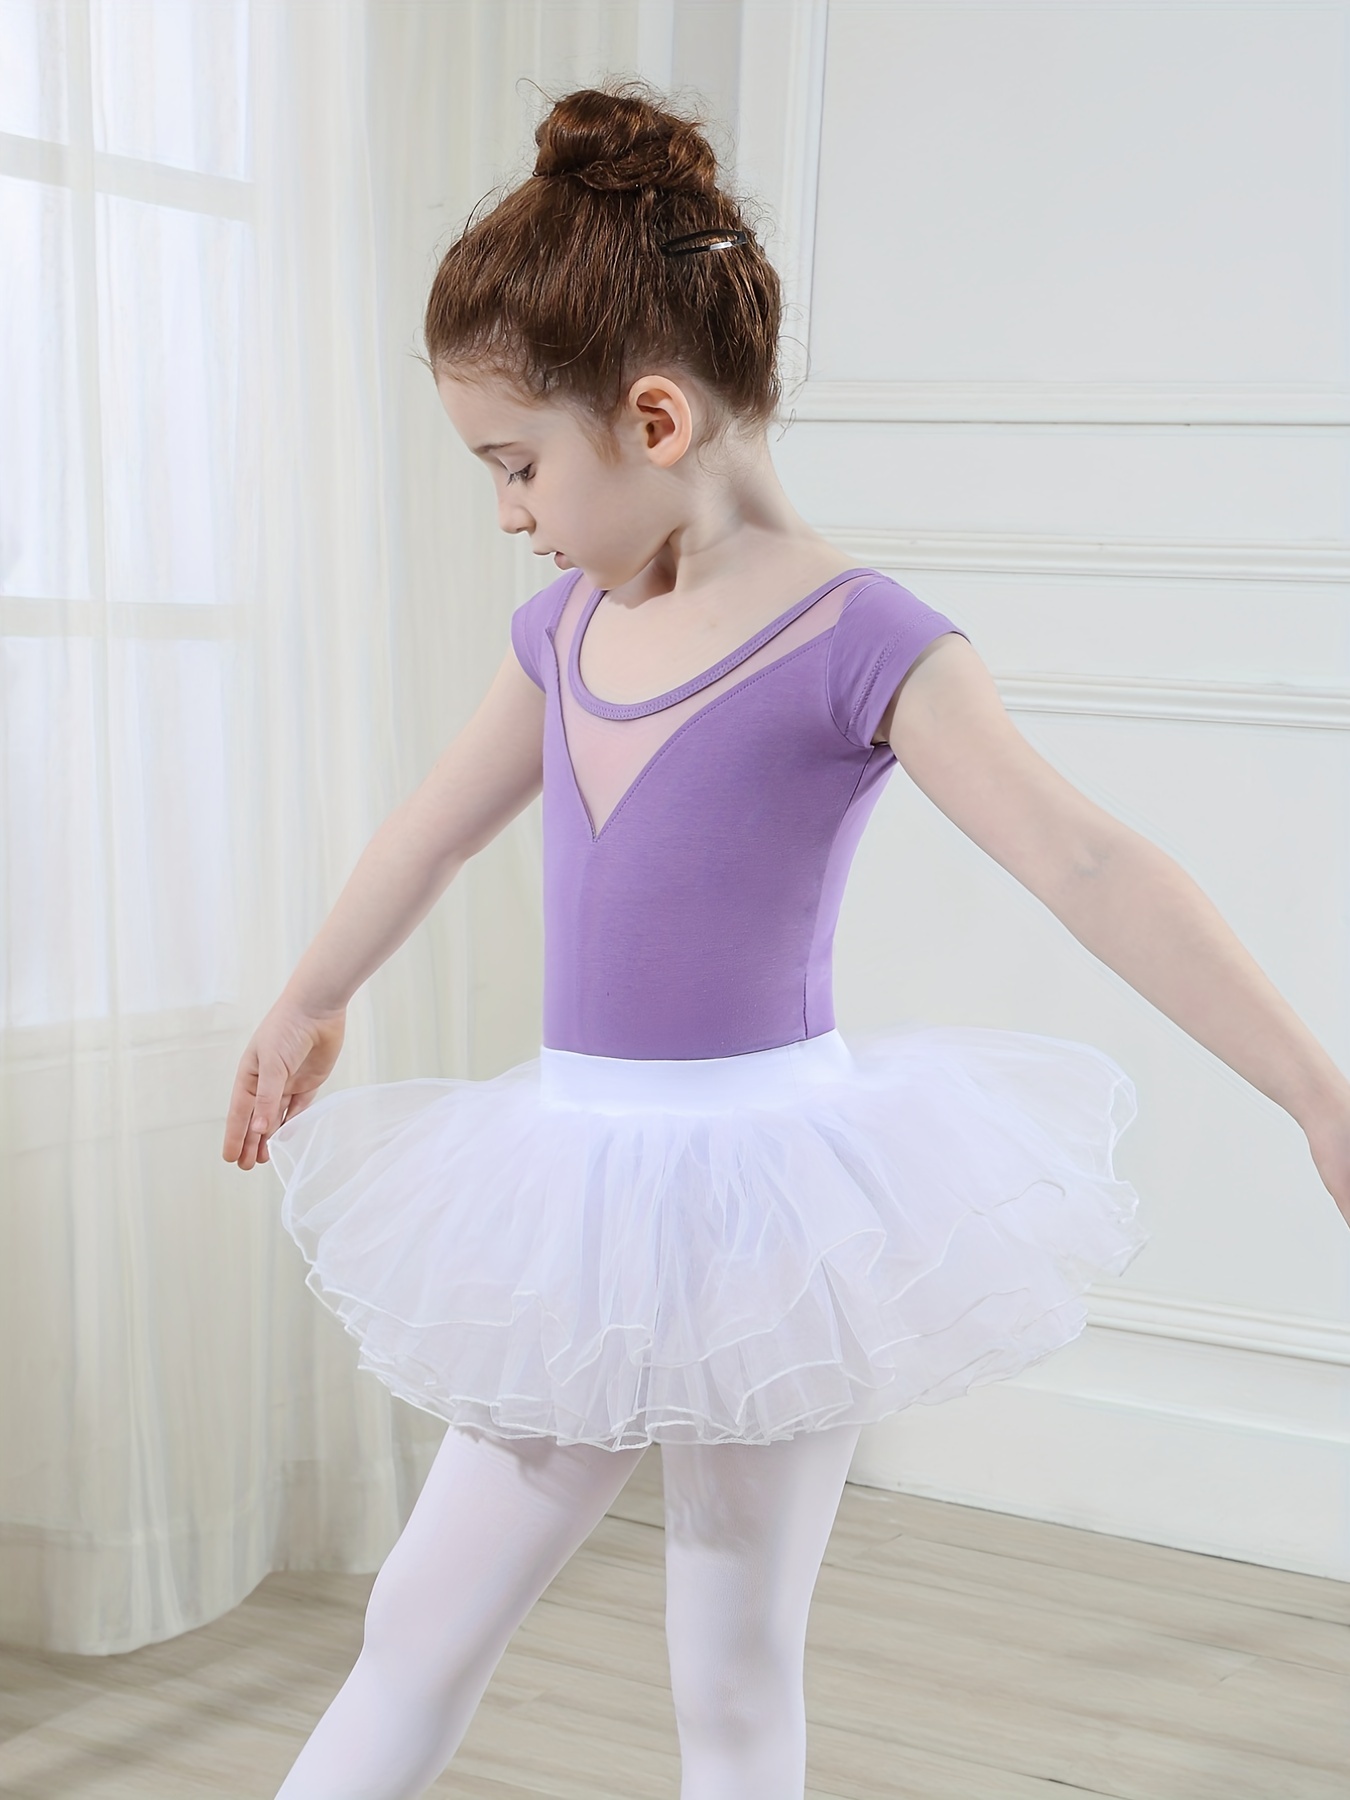 Vestuario - Tutús y faldas ballet